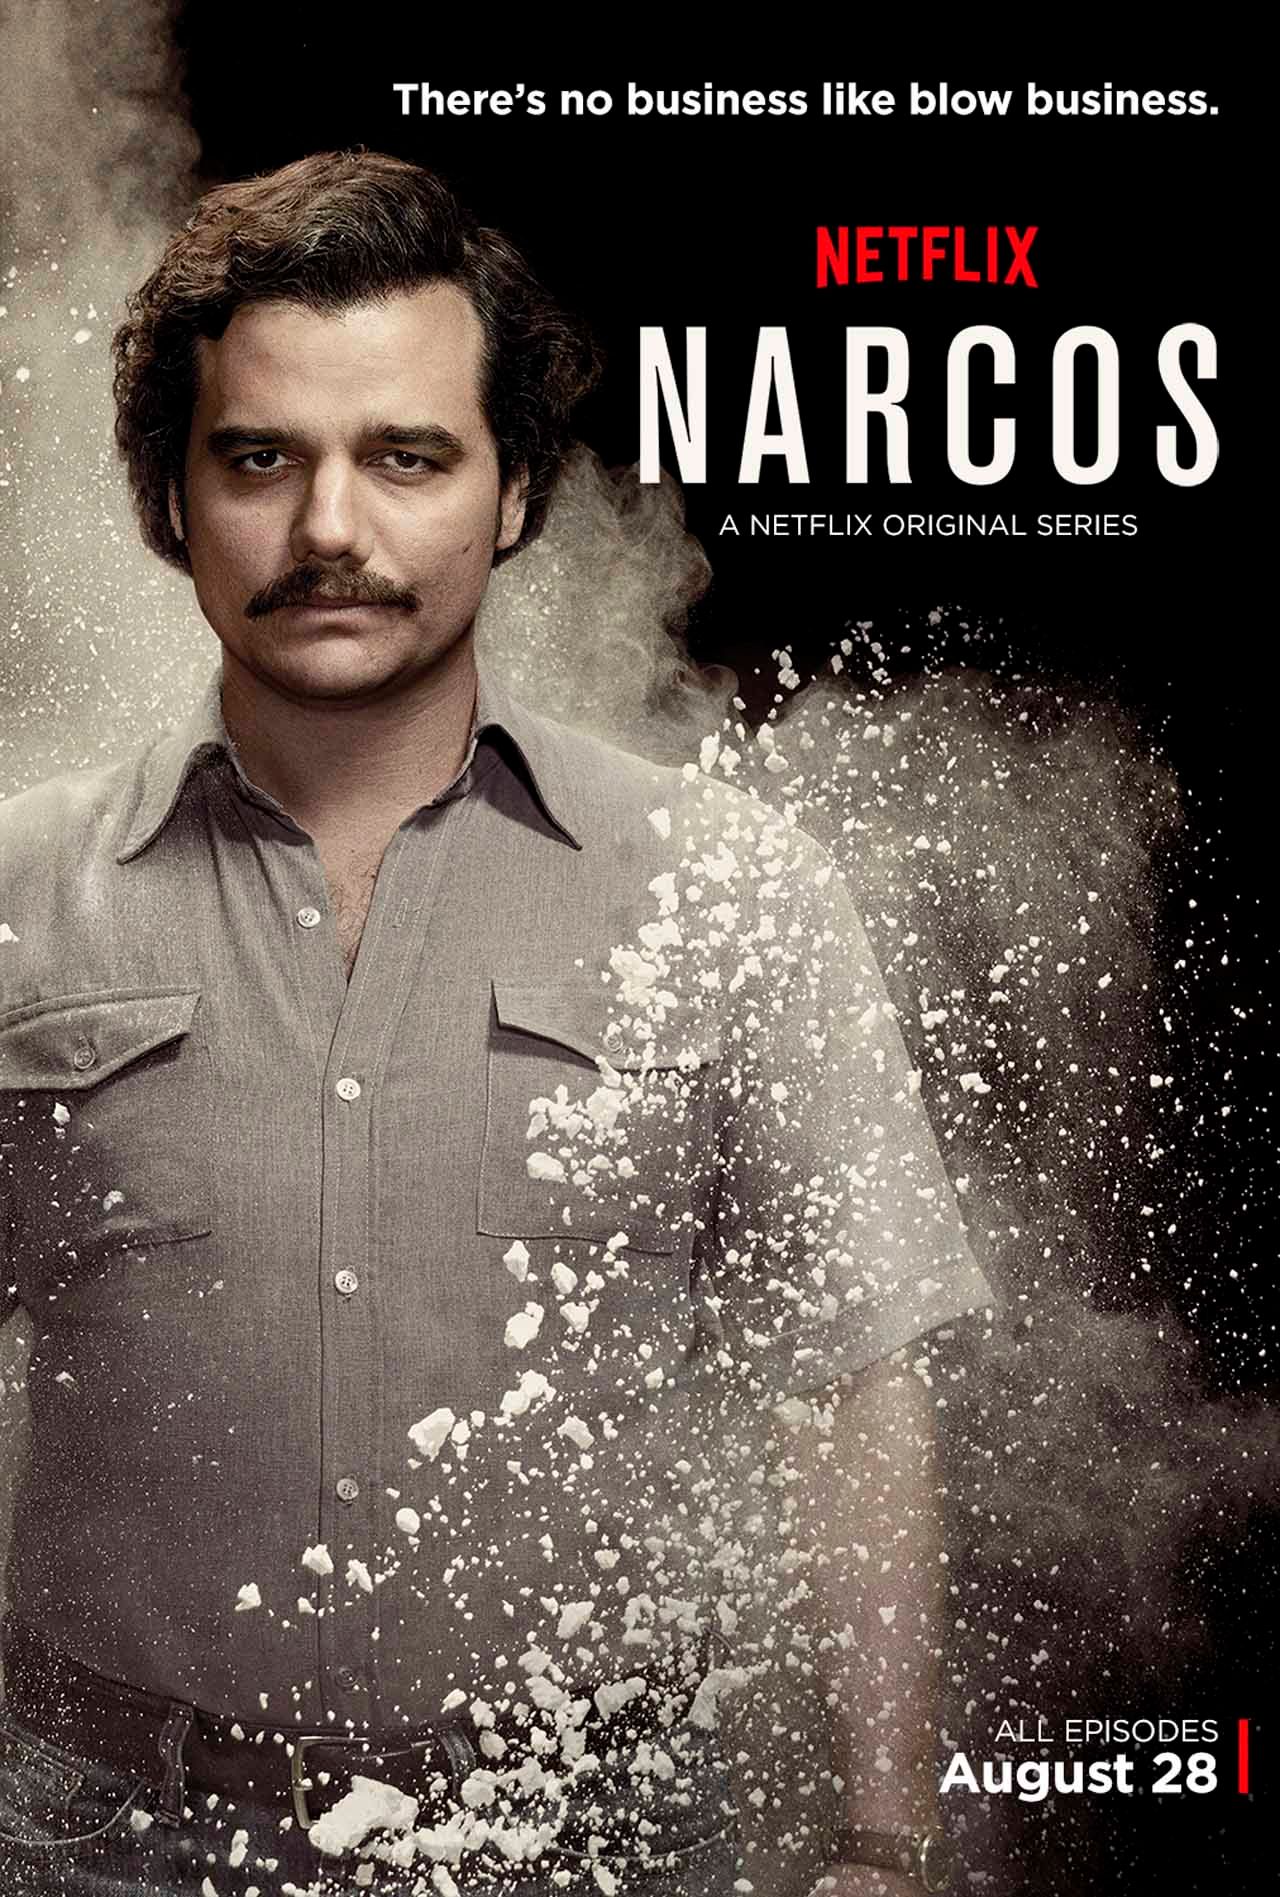 narcos-netflix-poster.jpg